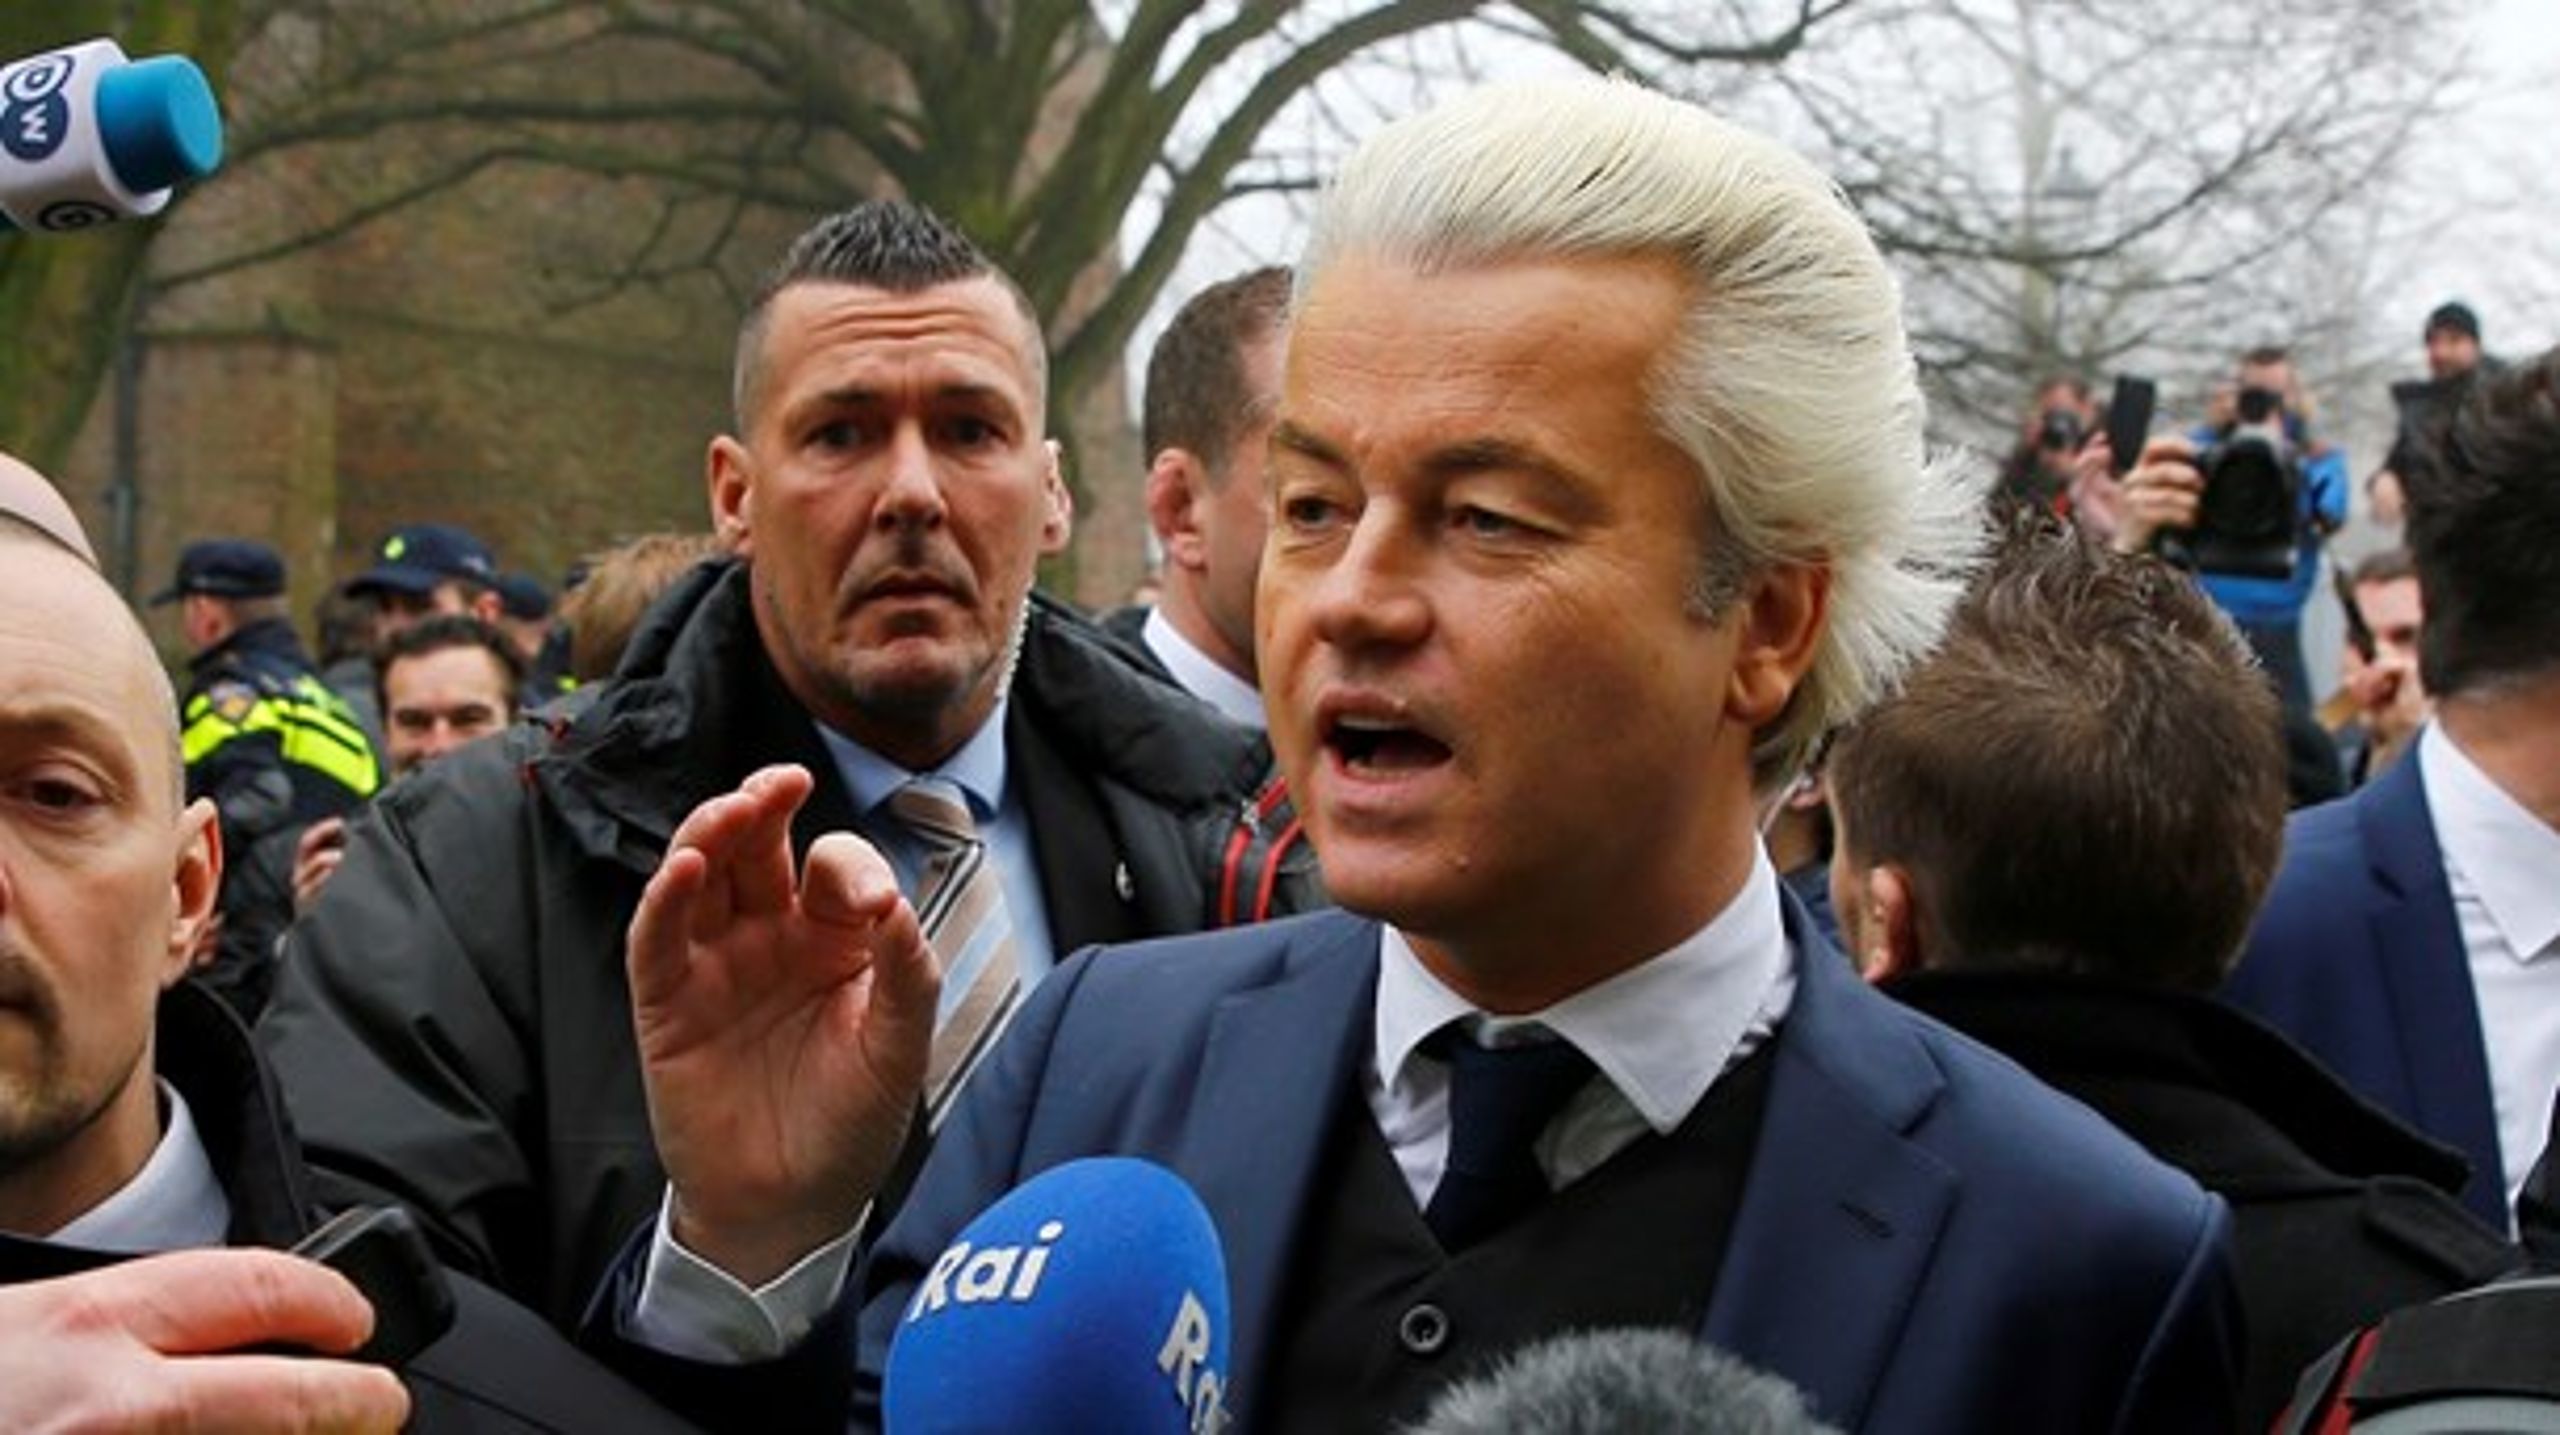 Det hollandske parlamentsvalg i næste uge vil vise, hvilken retning Europa er på vej i. Det skriver Kenneth Thue i sin klumme om det hollandske valg.